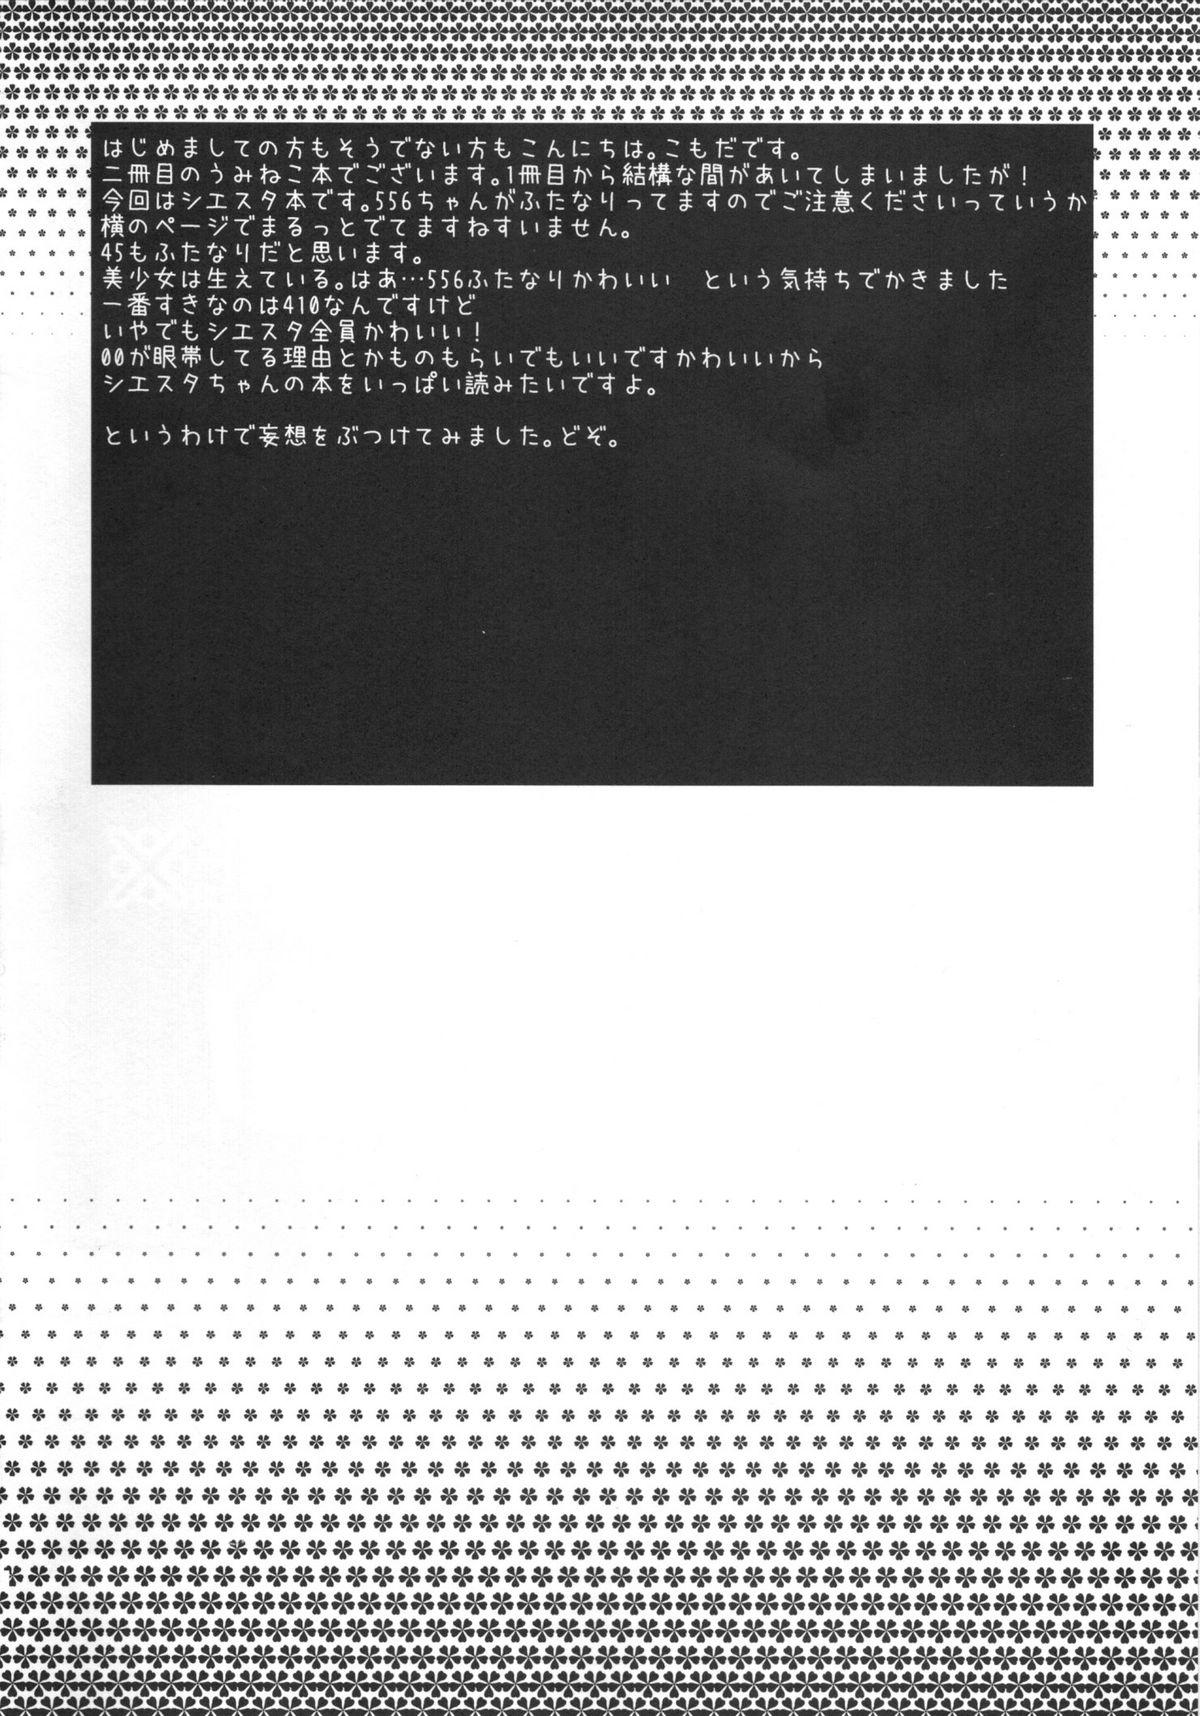 Piroca RabiRabi - Umineko no naku koro ni Roughsex - Page 3